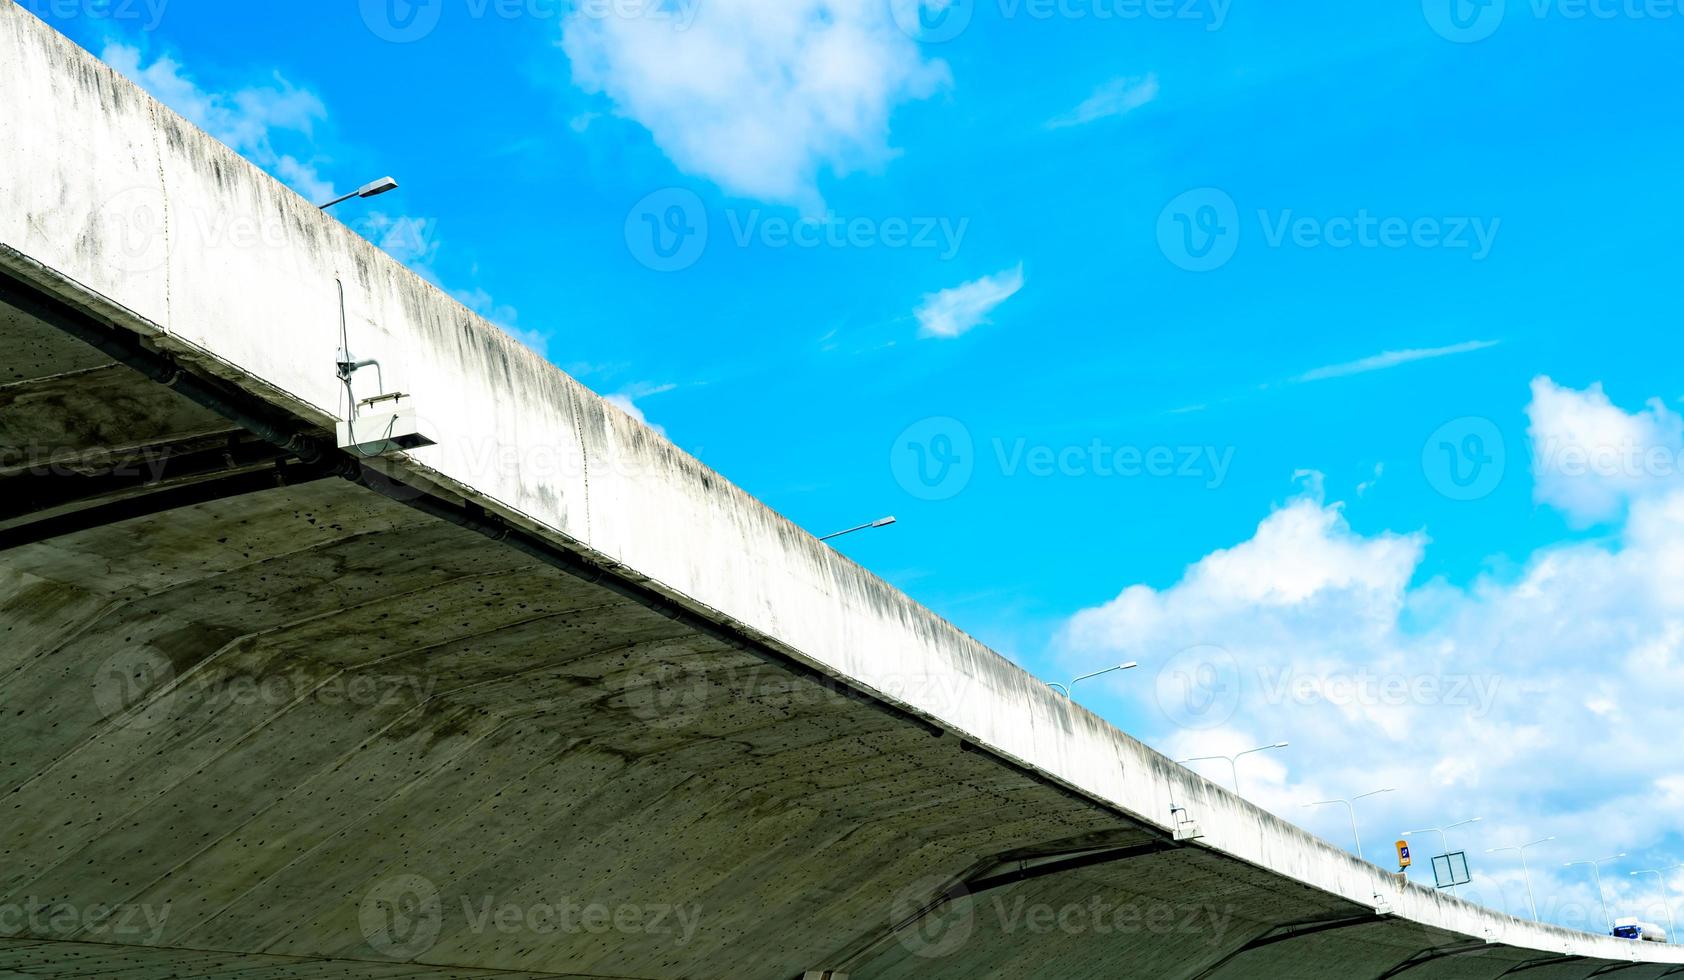 onderaanzicht van verhoogde betonnen snelweg. betonnen weg oversteken. weg viaduct structuur. moderne snelweg. transport infrastructuur. betonnen brug technische constructie. brug architectuur. foto